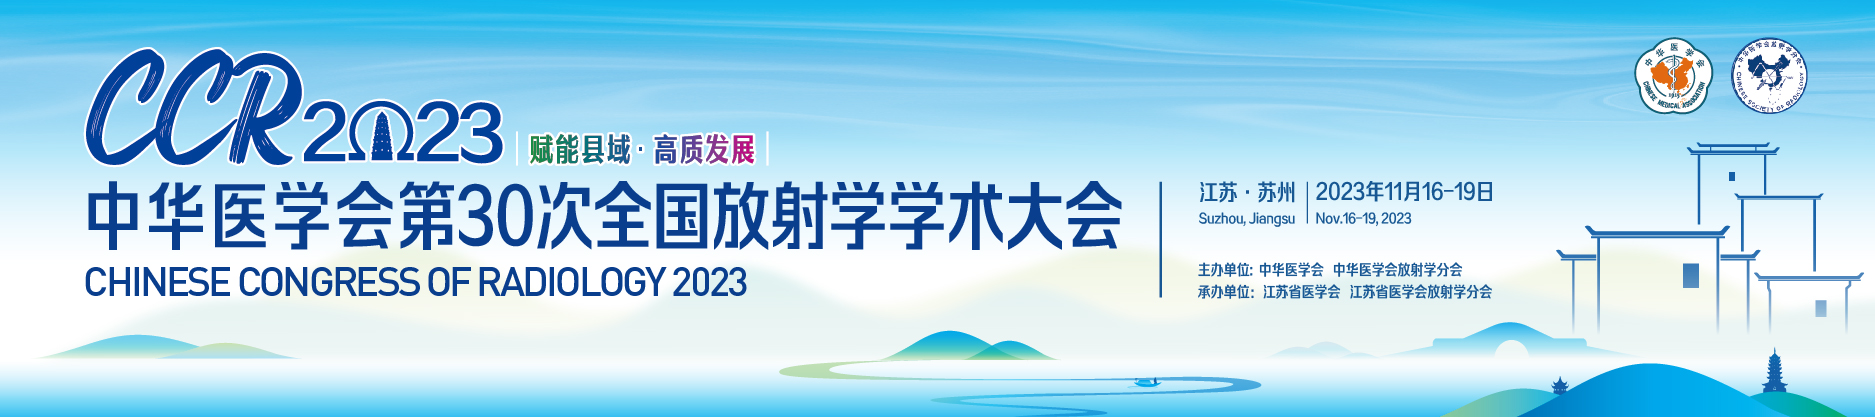 中华医学会第30次全国放射学学术大会(CCR2023)